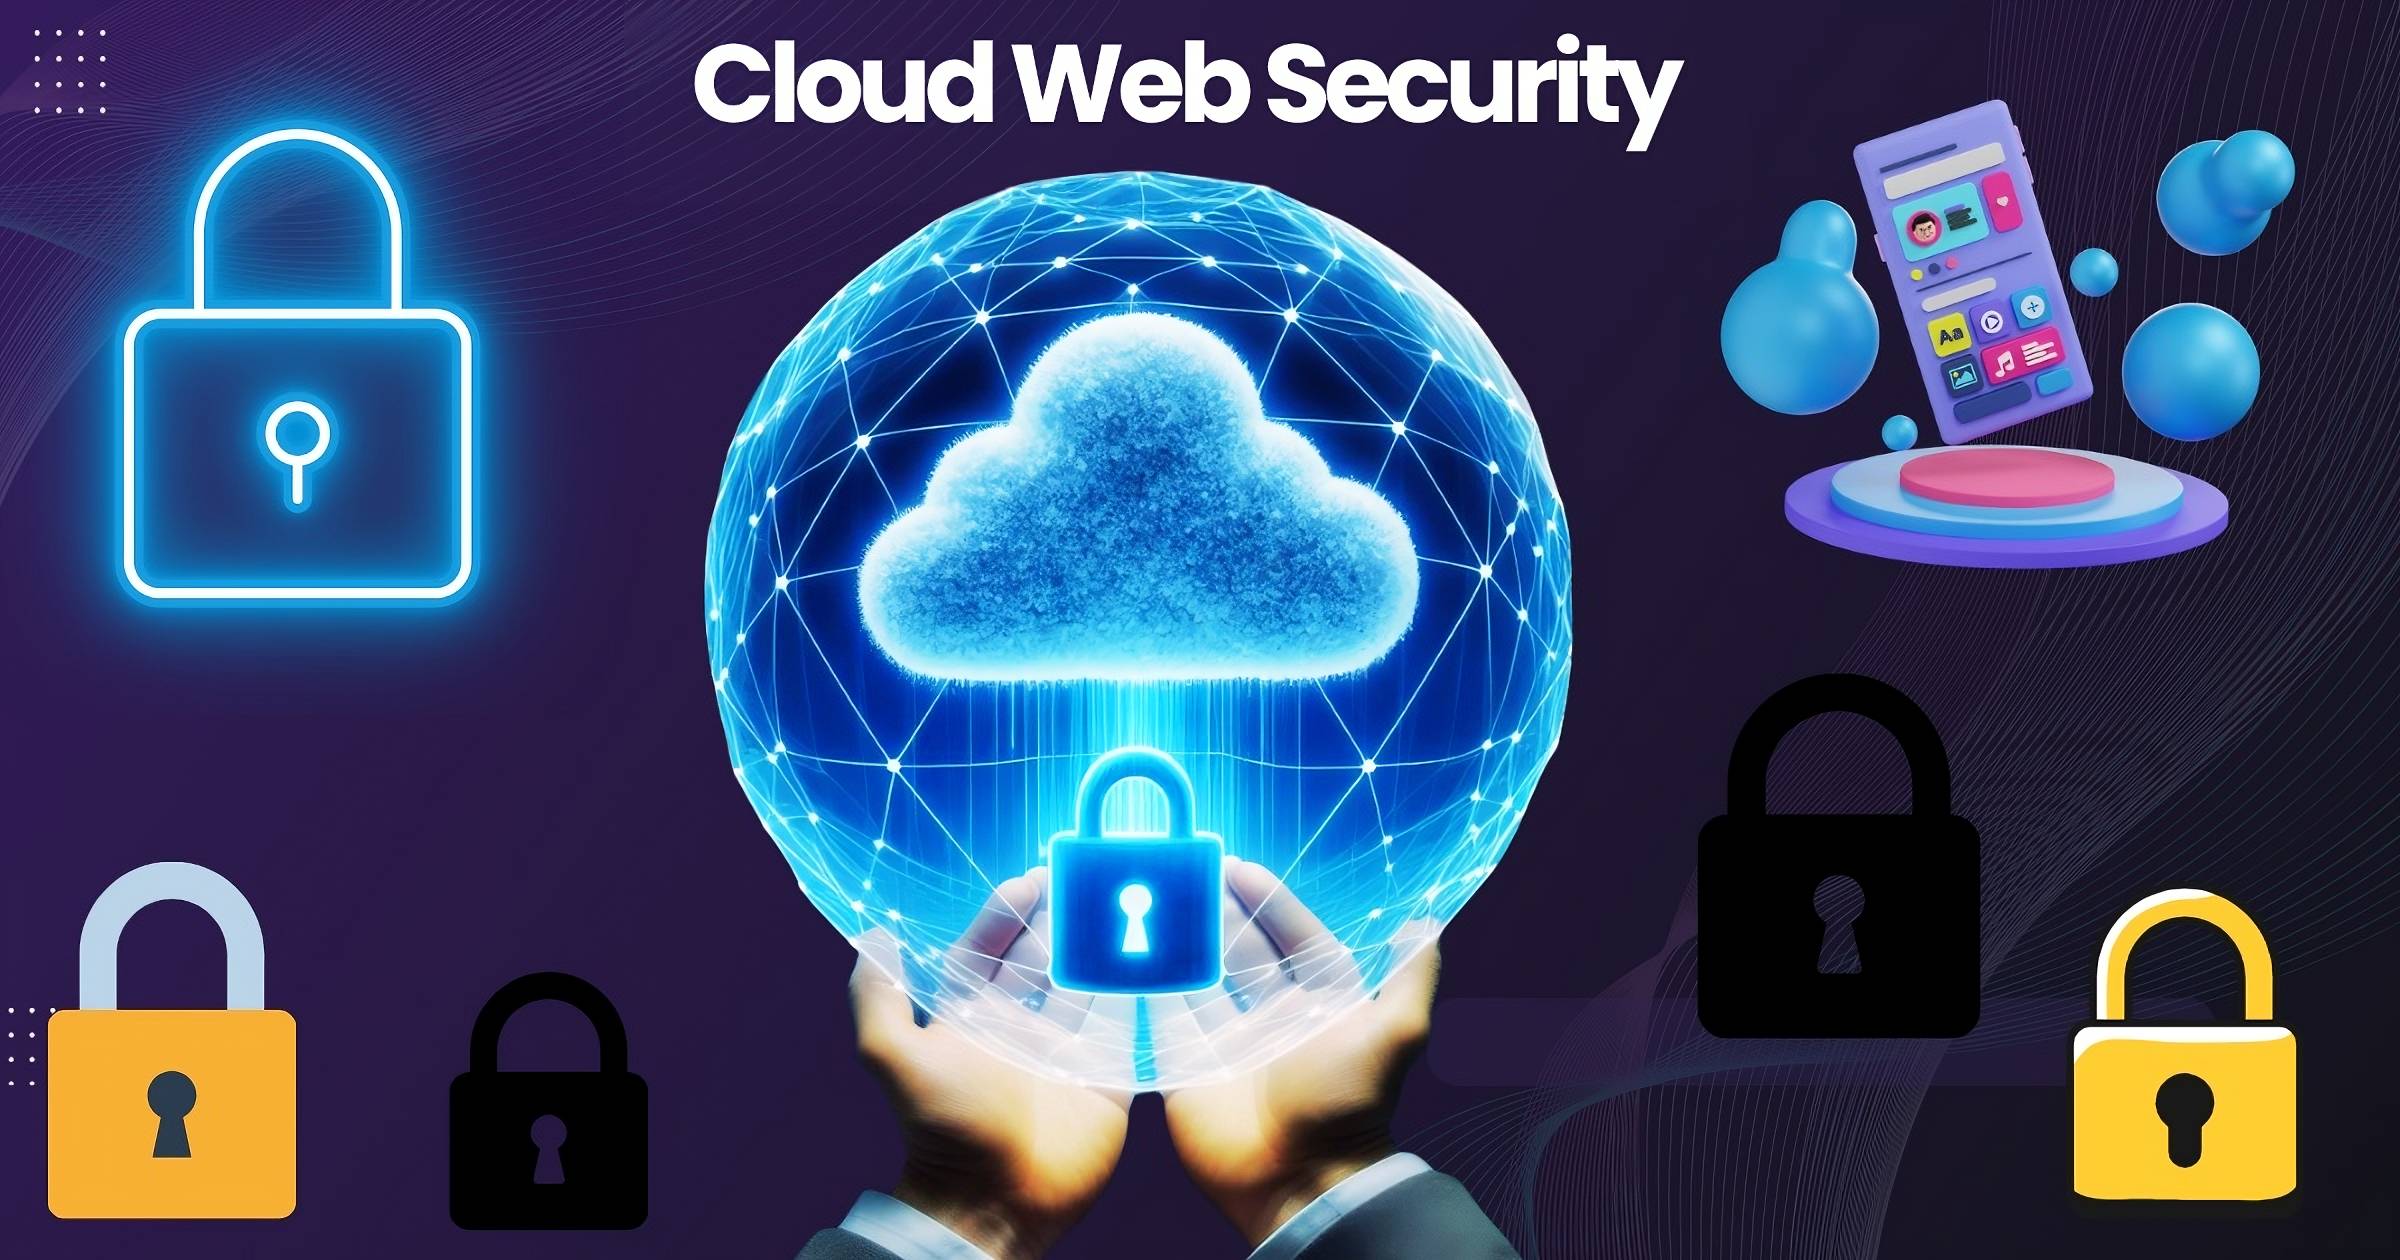 Cloud Web Security